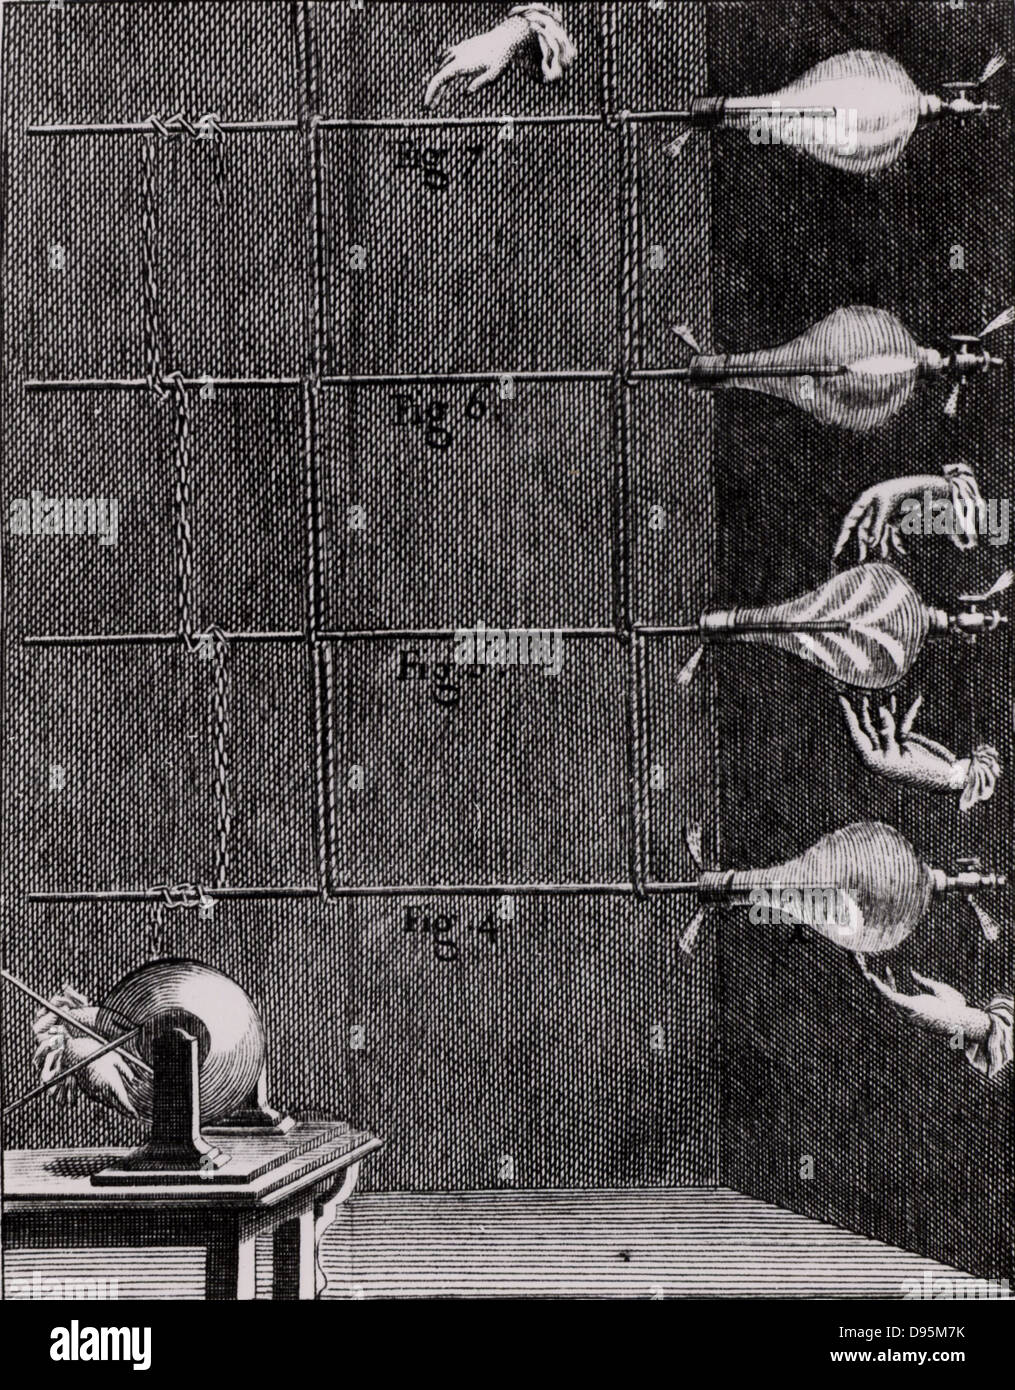 Elektrische Entladungen in evakuiert Glas Gefäße durch statische Elektrizität, die durch einen gläsernen Globus elektrische Maschine verursacht. Von "Forschung sur les Particulaires Ursachen des Phenomenes Electriques" durch Abbe Nollet (Paris, 1753). Gravur. Stockfoto